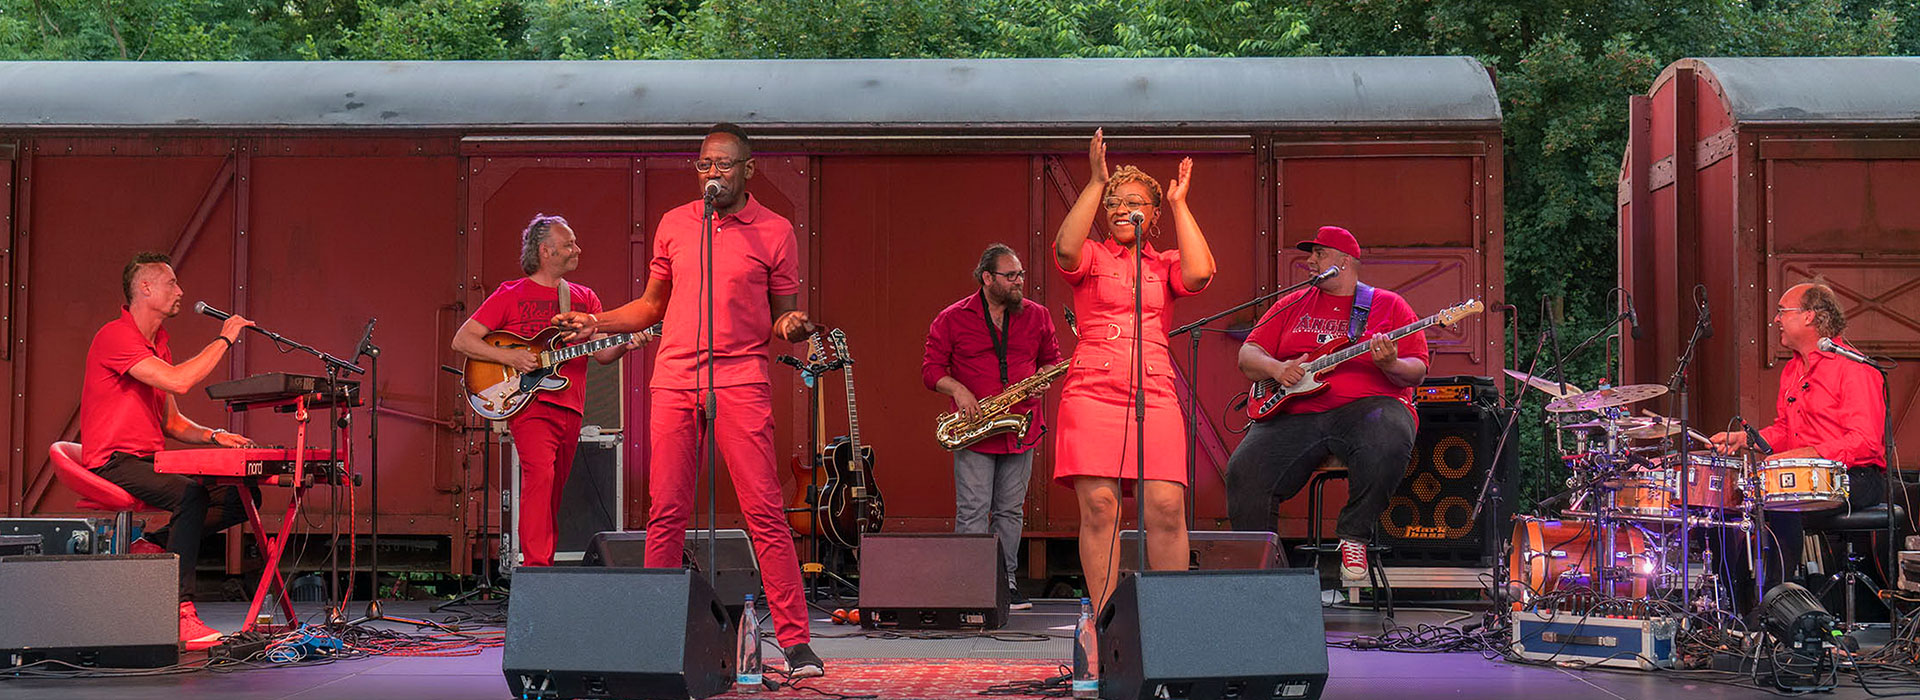 Eine Soul-Band spielt am Bahnhof in Püttlingen in roter Kleidung